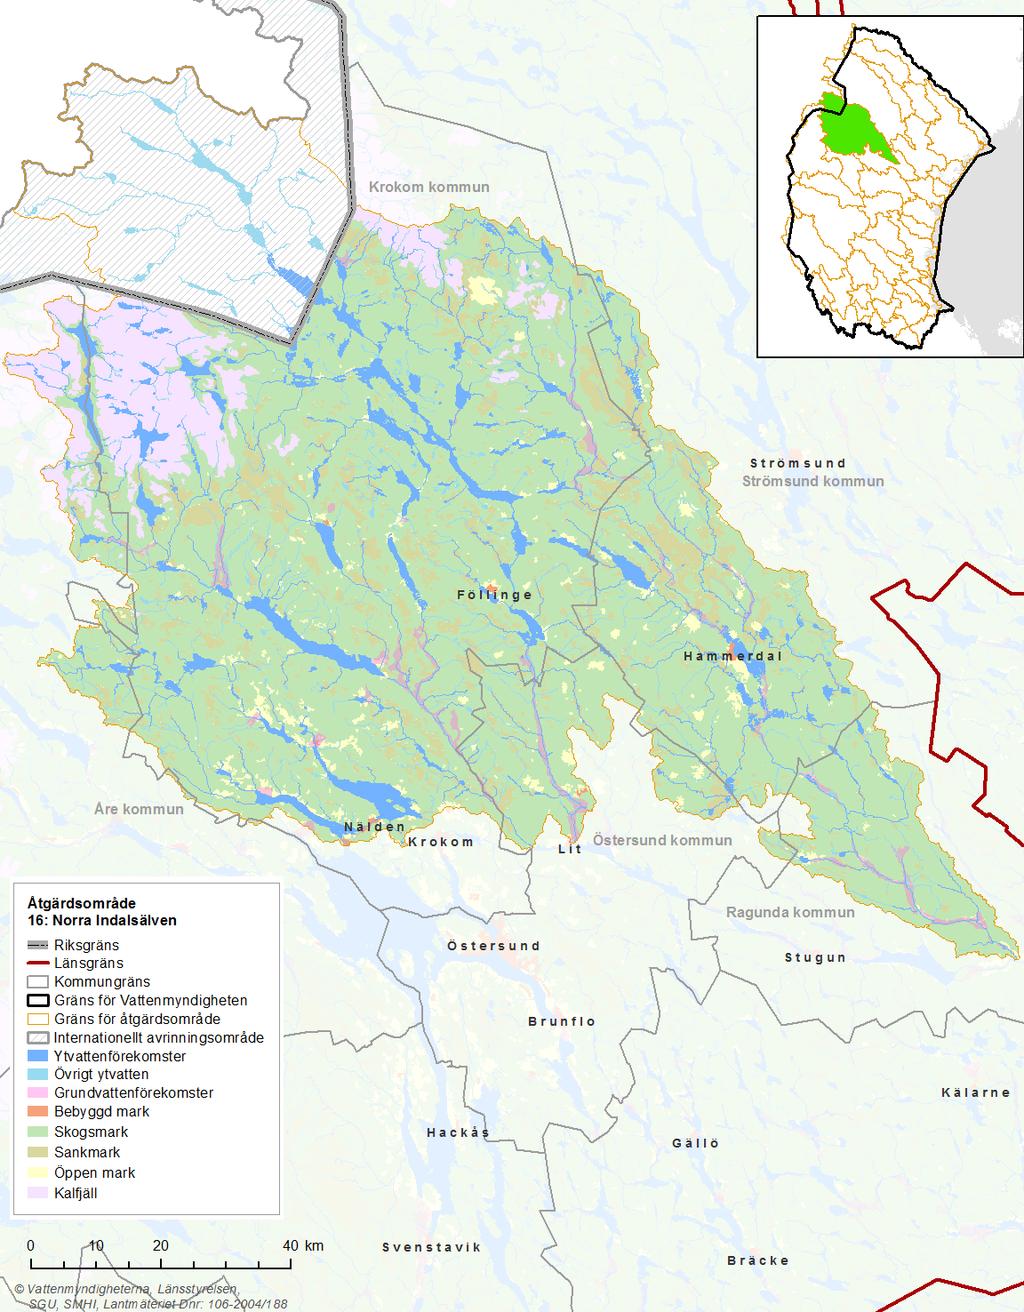 Bild 1: Kartan visar Norra Indalsälvens markanvändning